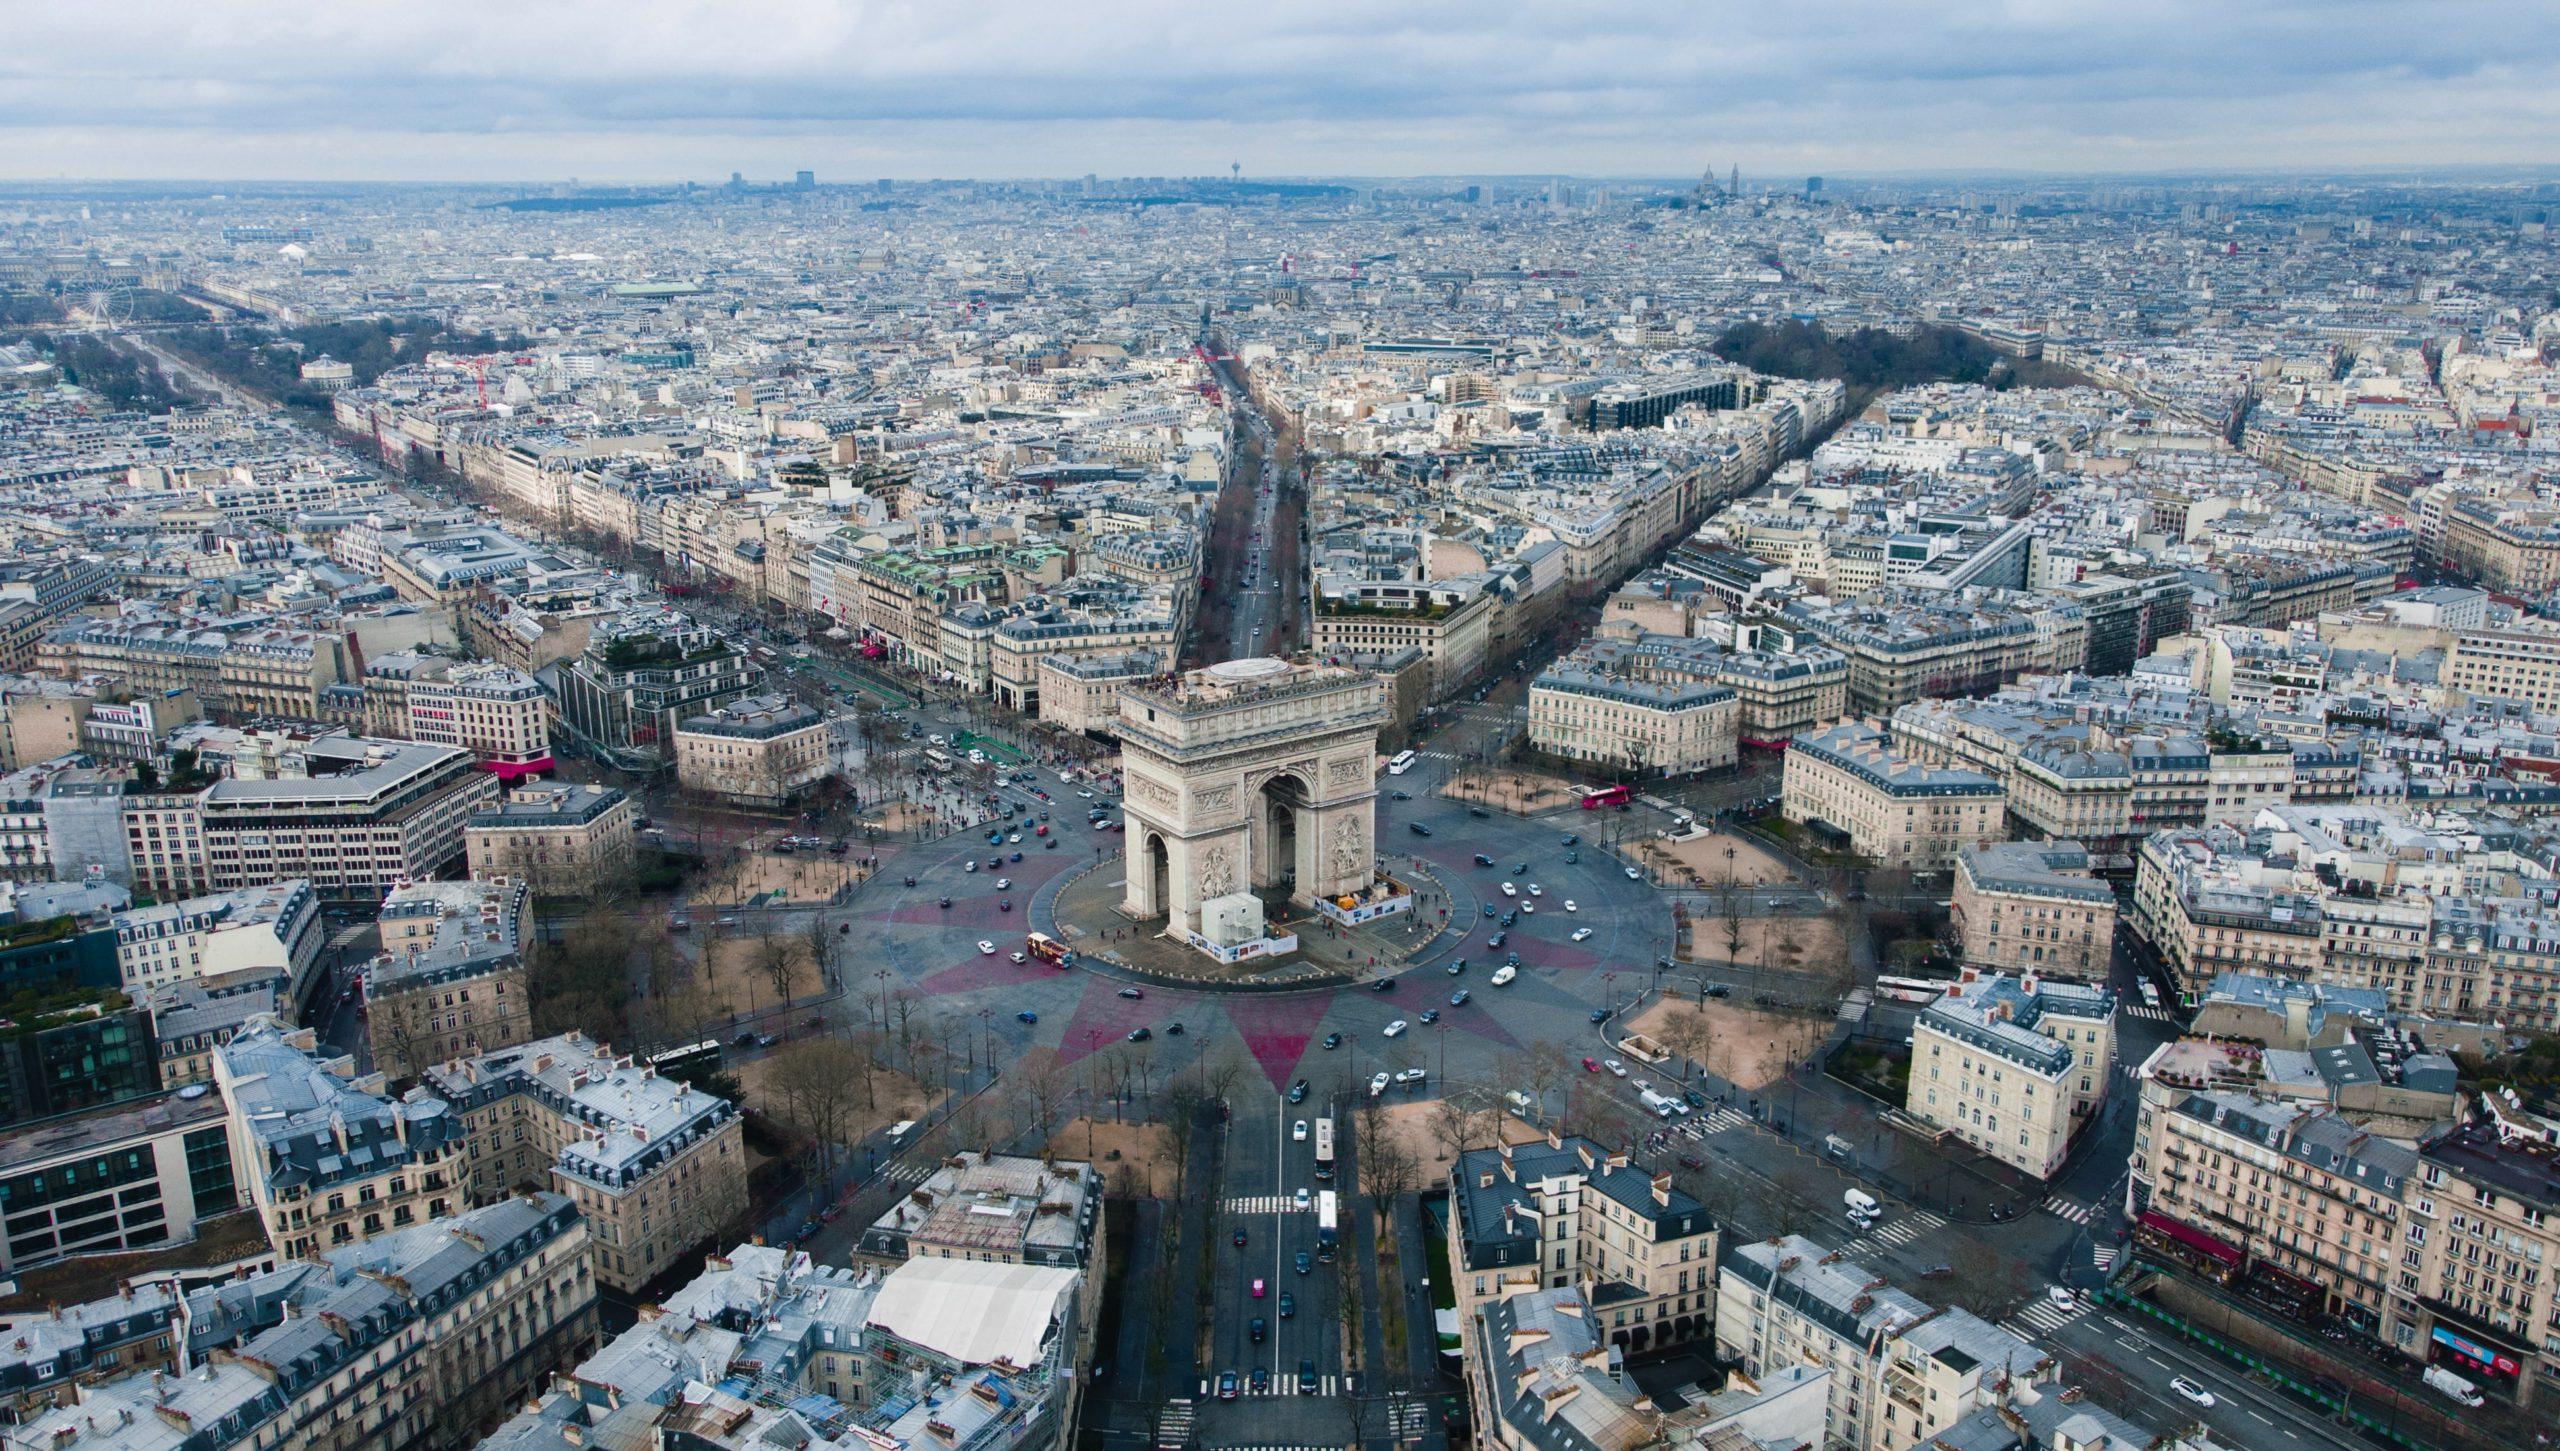 Photo of Arche de Triomphe in France